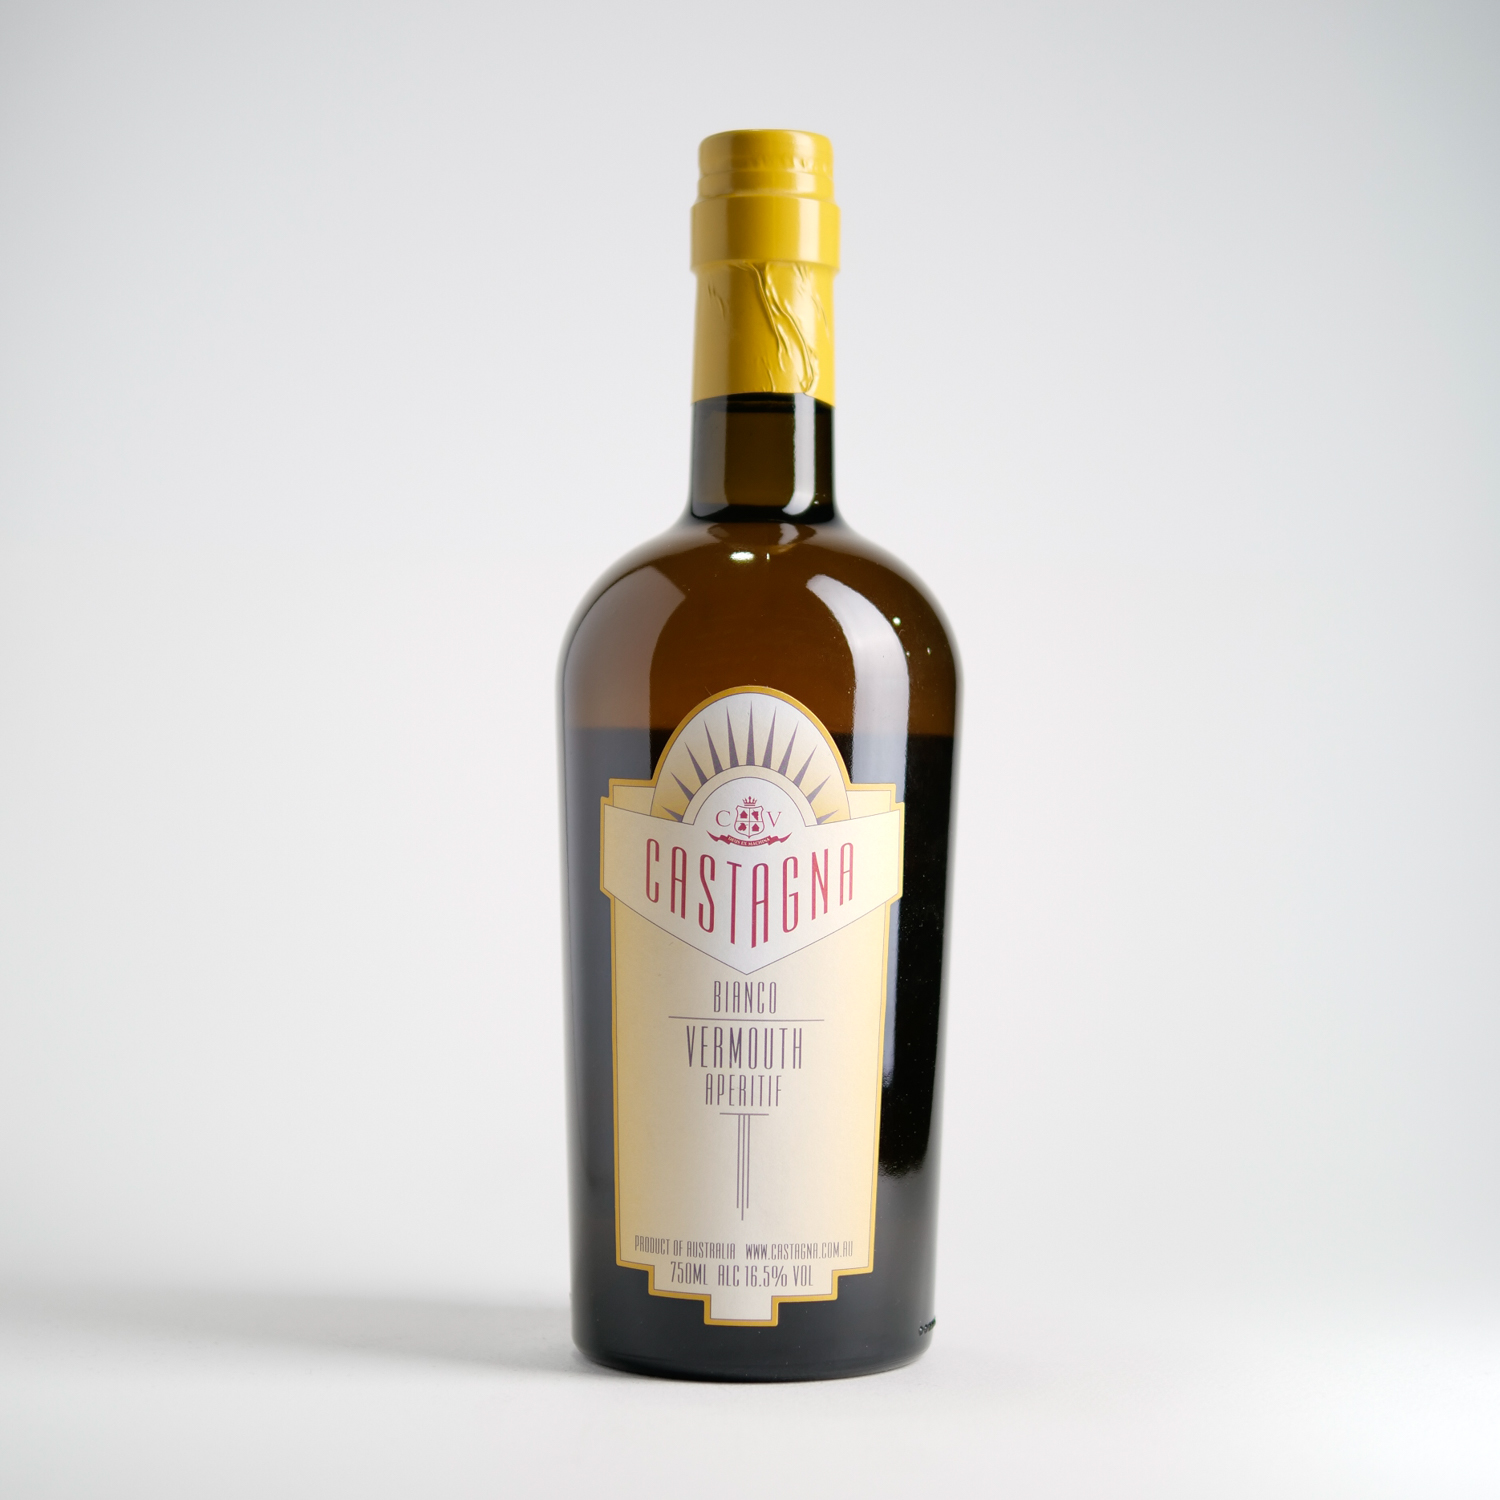 Castagna Vermouth Bianco 2016